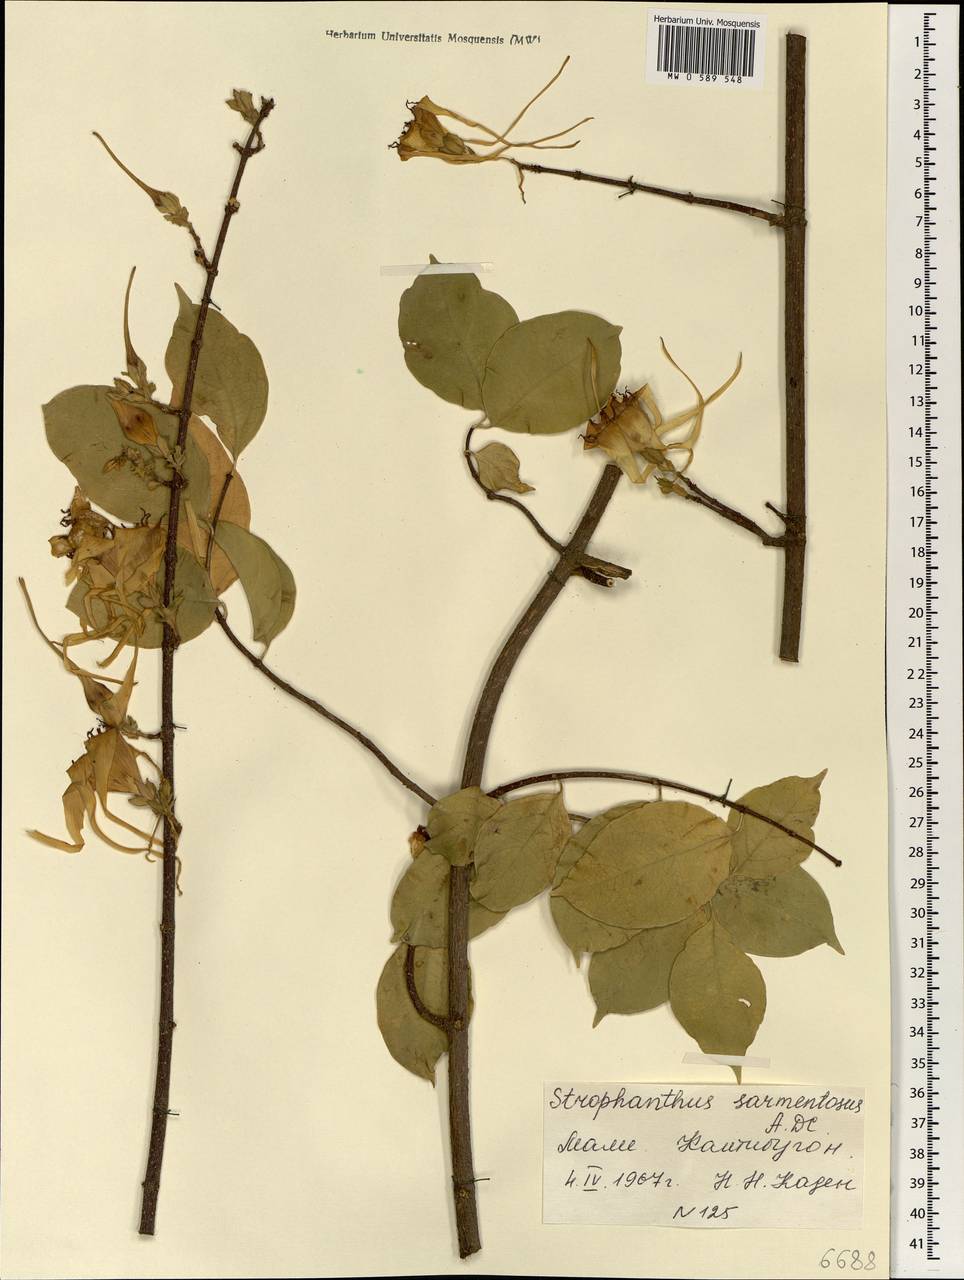 Strophanthus sarmentosus DC., Африка (AFR) (Мали)